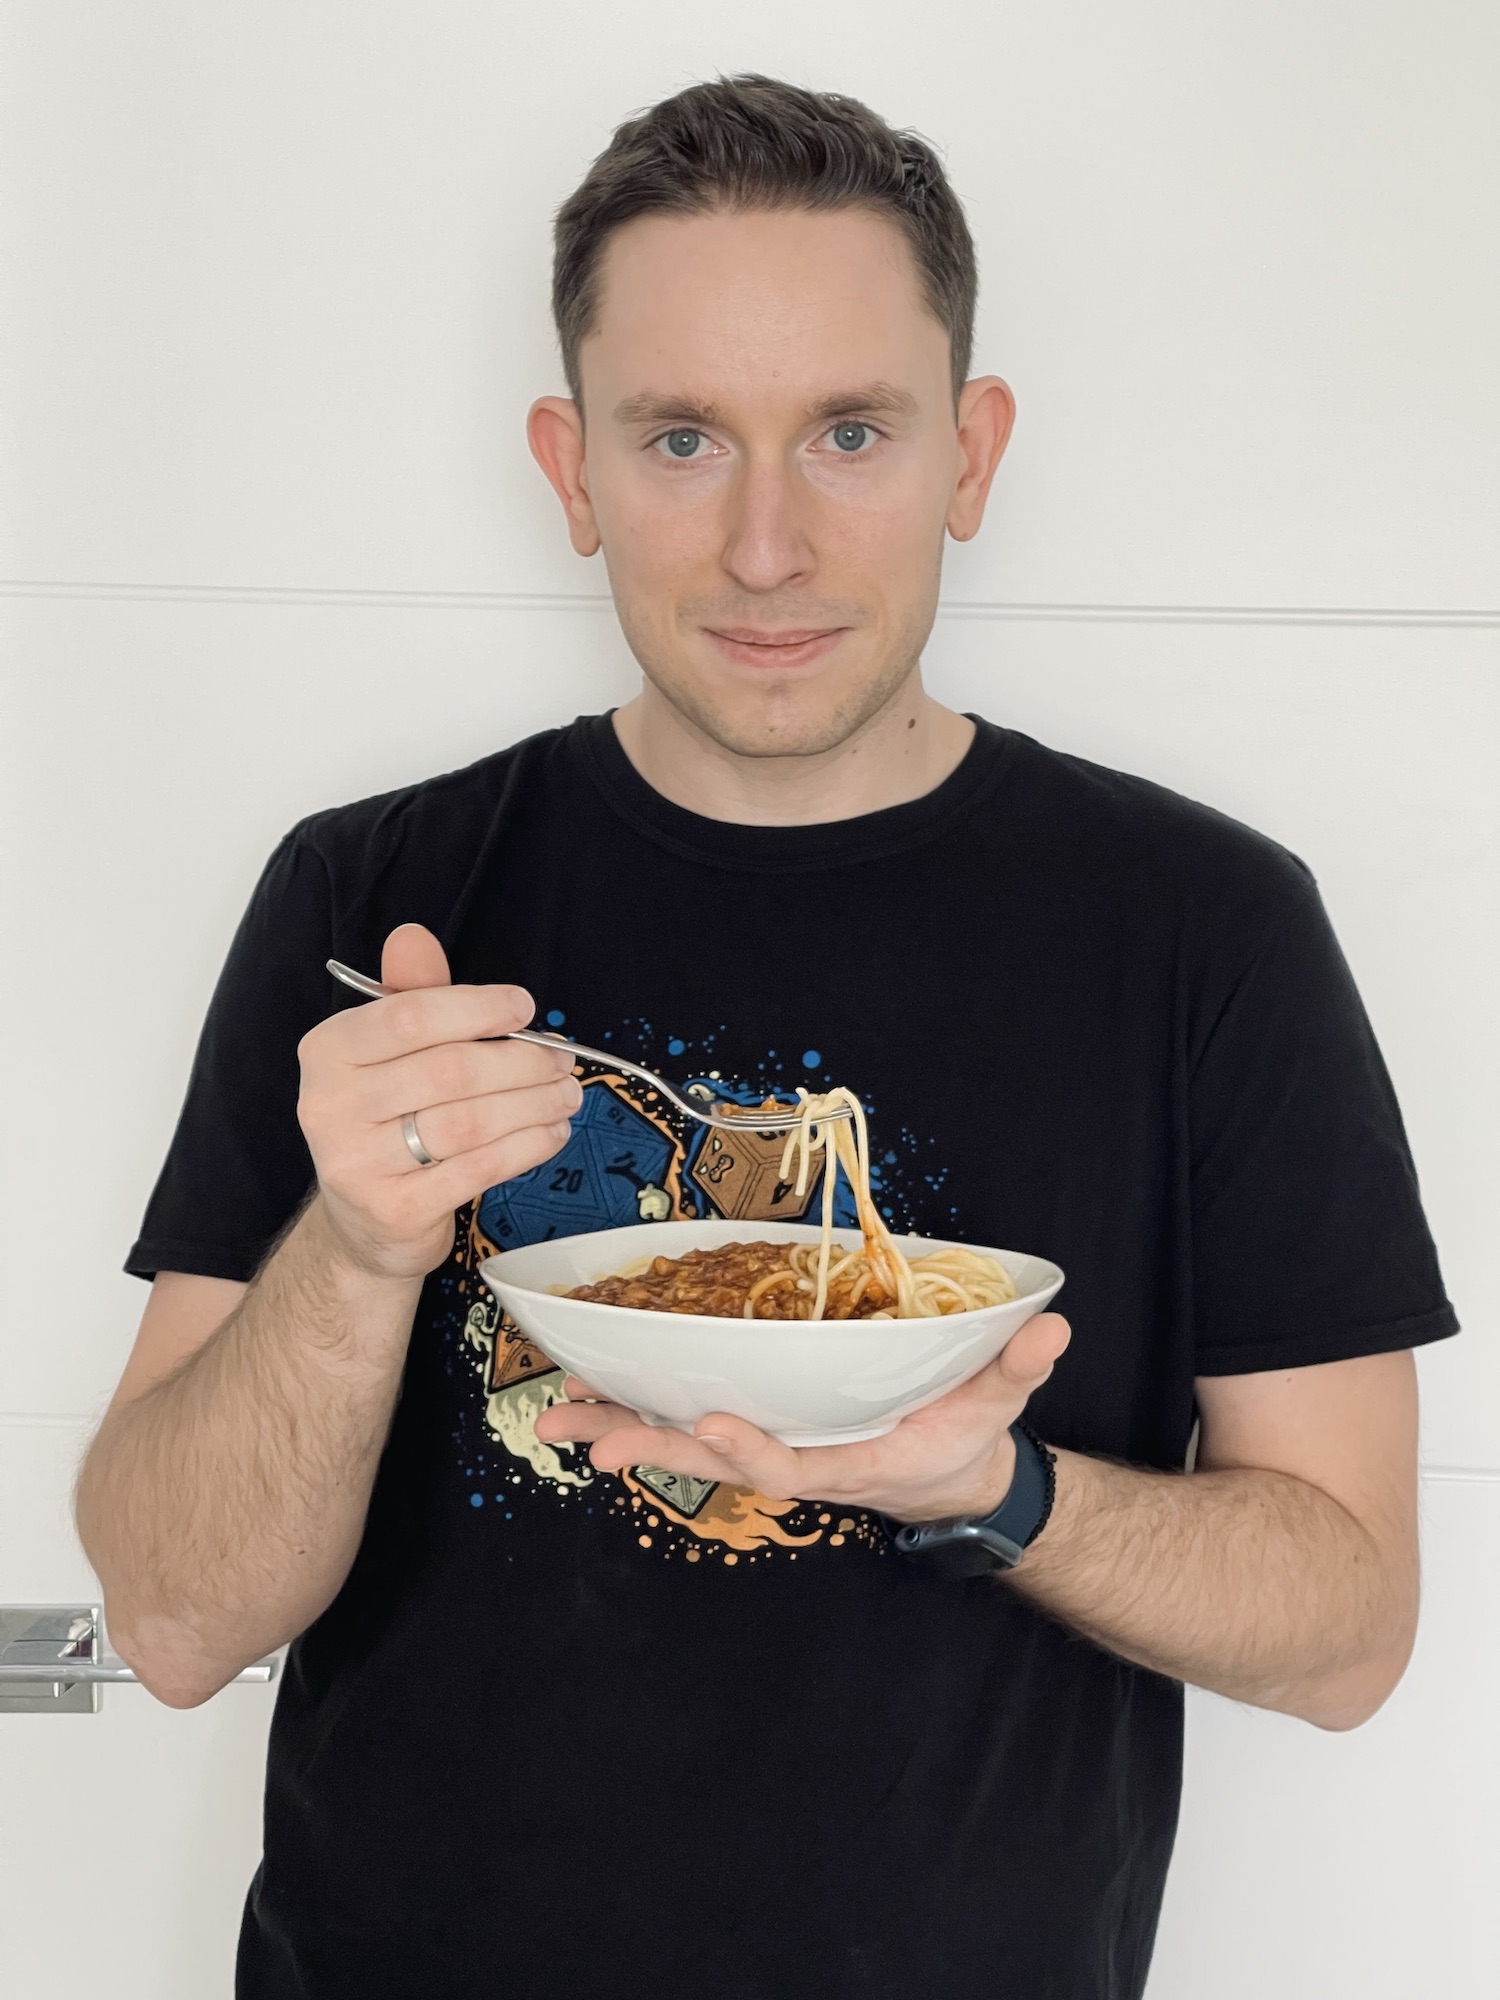 Przemek with spaghetti